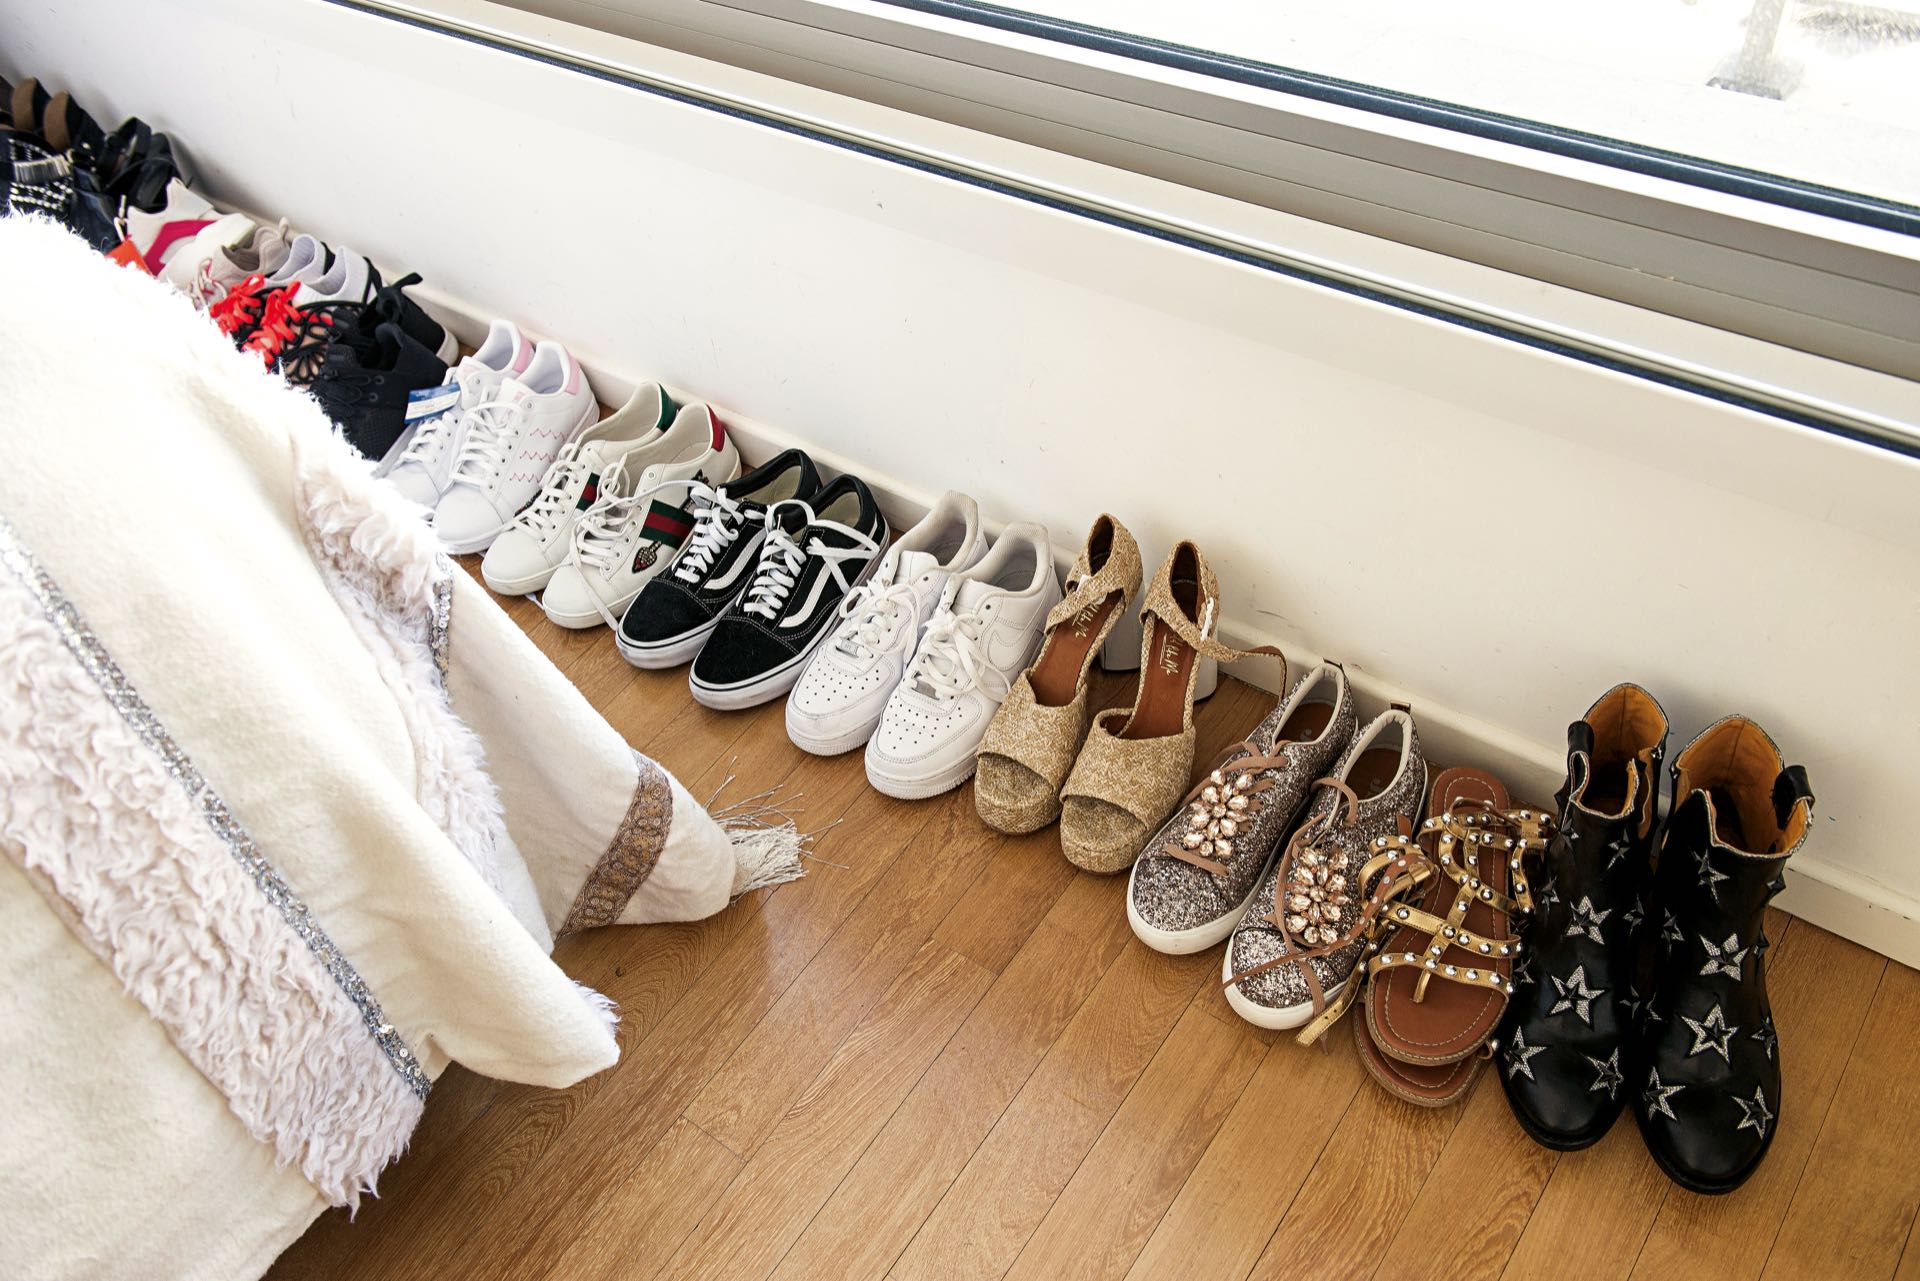 más de 400 pares de zapatos (“algunos los tengo en la casa de mis papás porque no me entran”, aclara), 